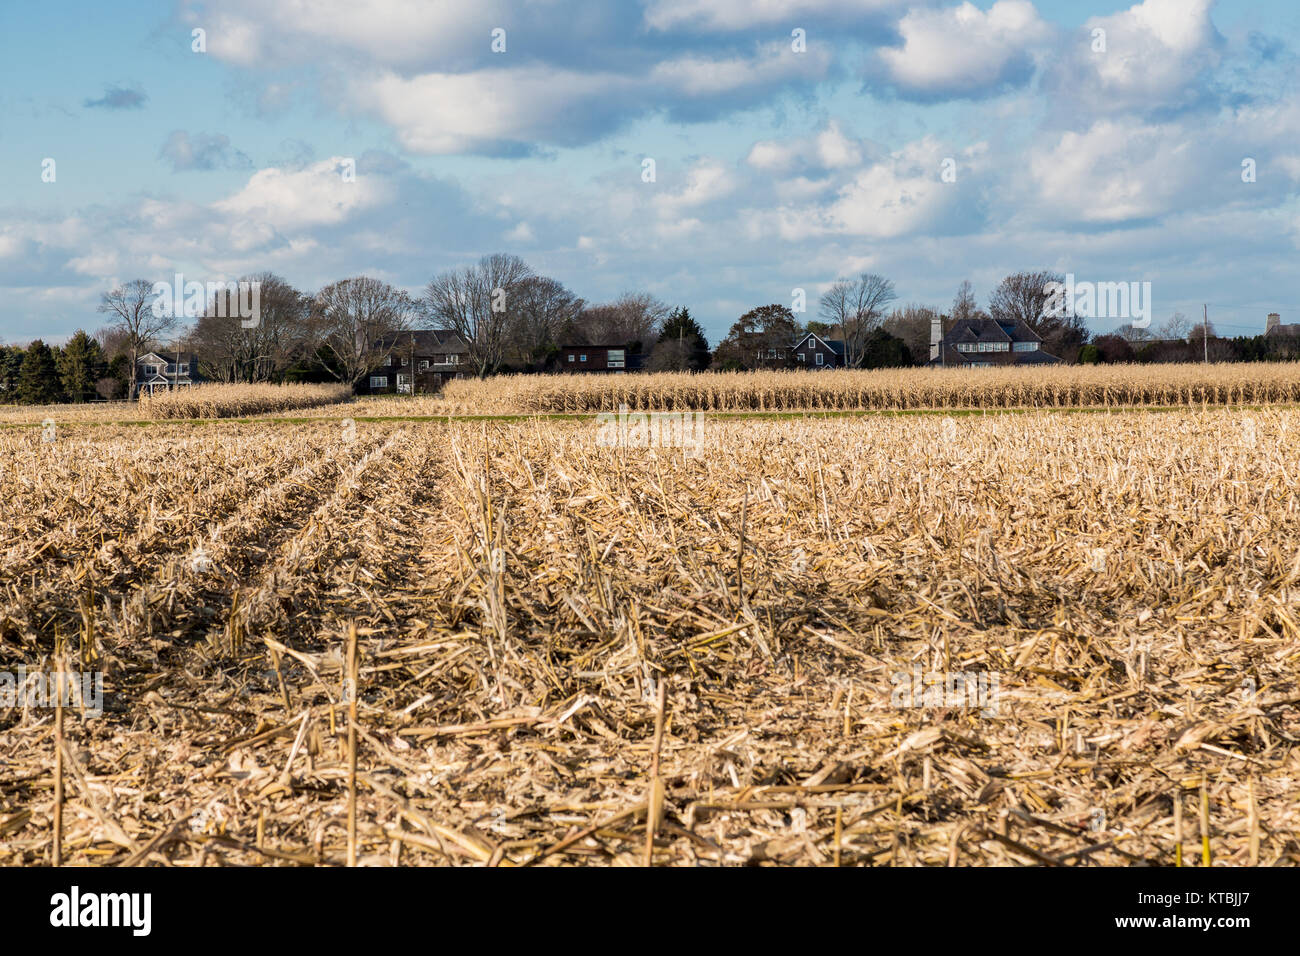 corn field in east hampton, ny Stock Photo